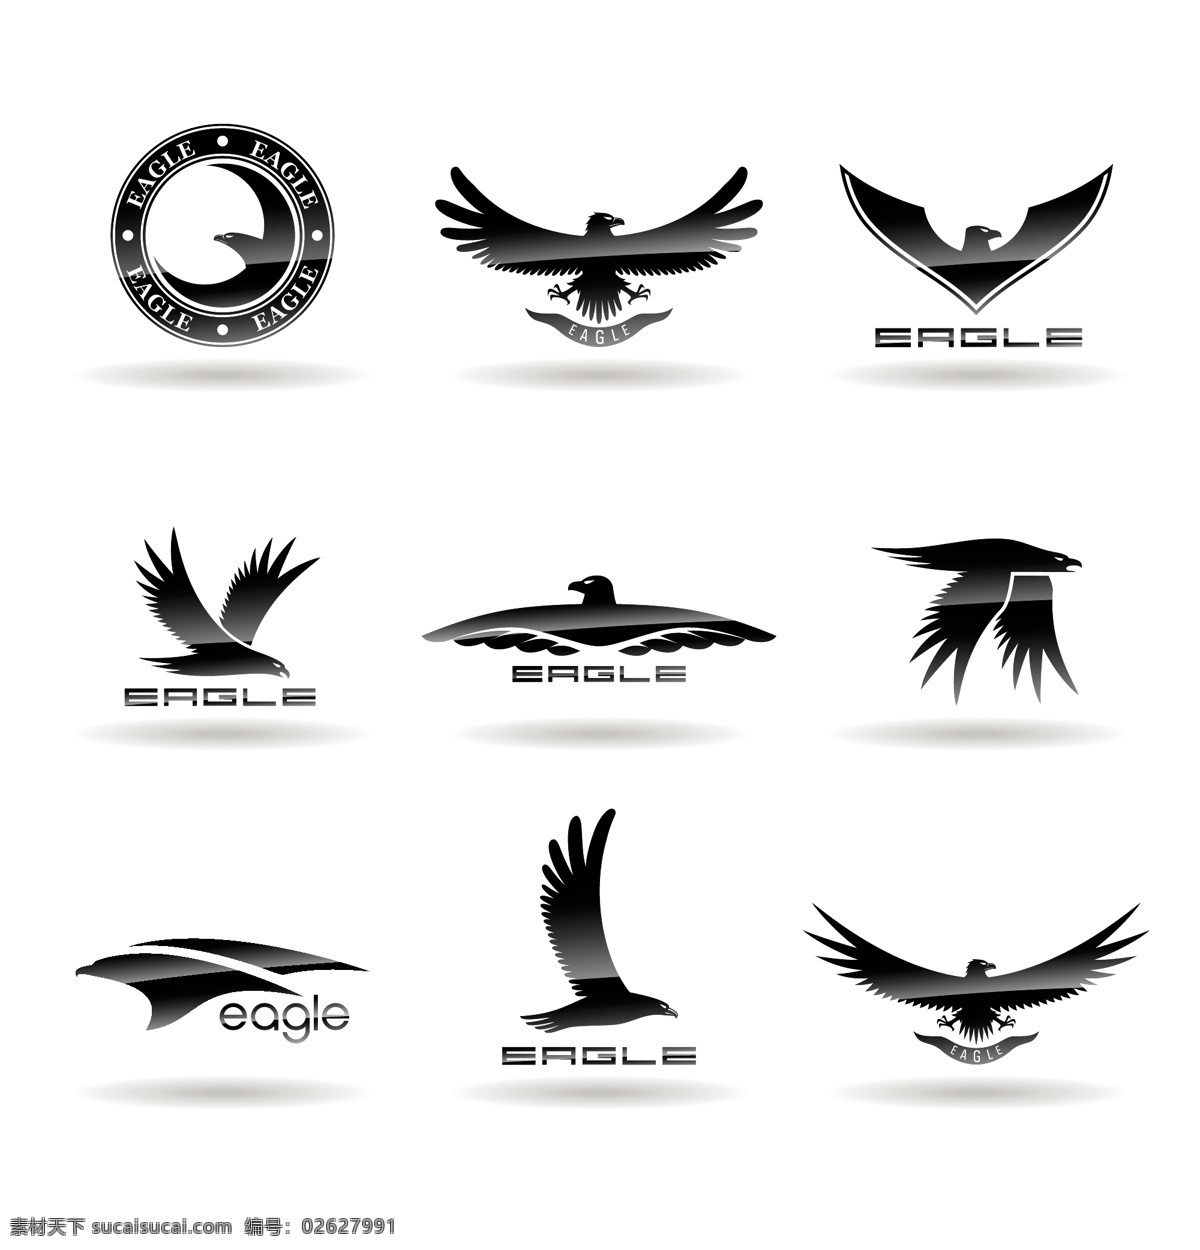 雄鹰 logo 矢量 老鹰图标 雕鹰标志设计 创意 图形 公司标志 企业 商标设计 logo设计 标志图标 矢量素材